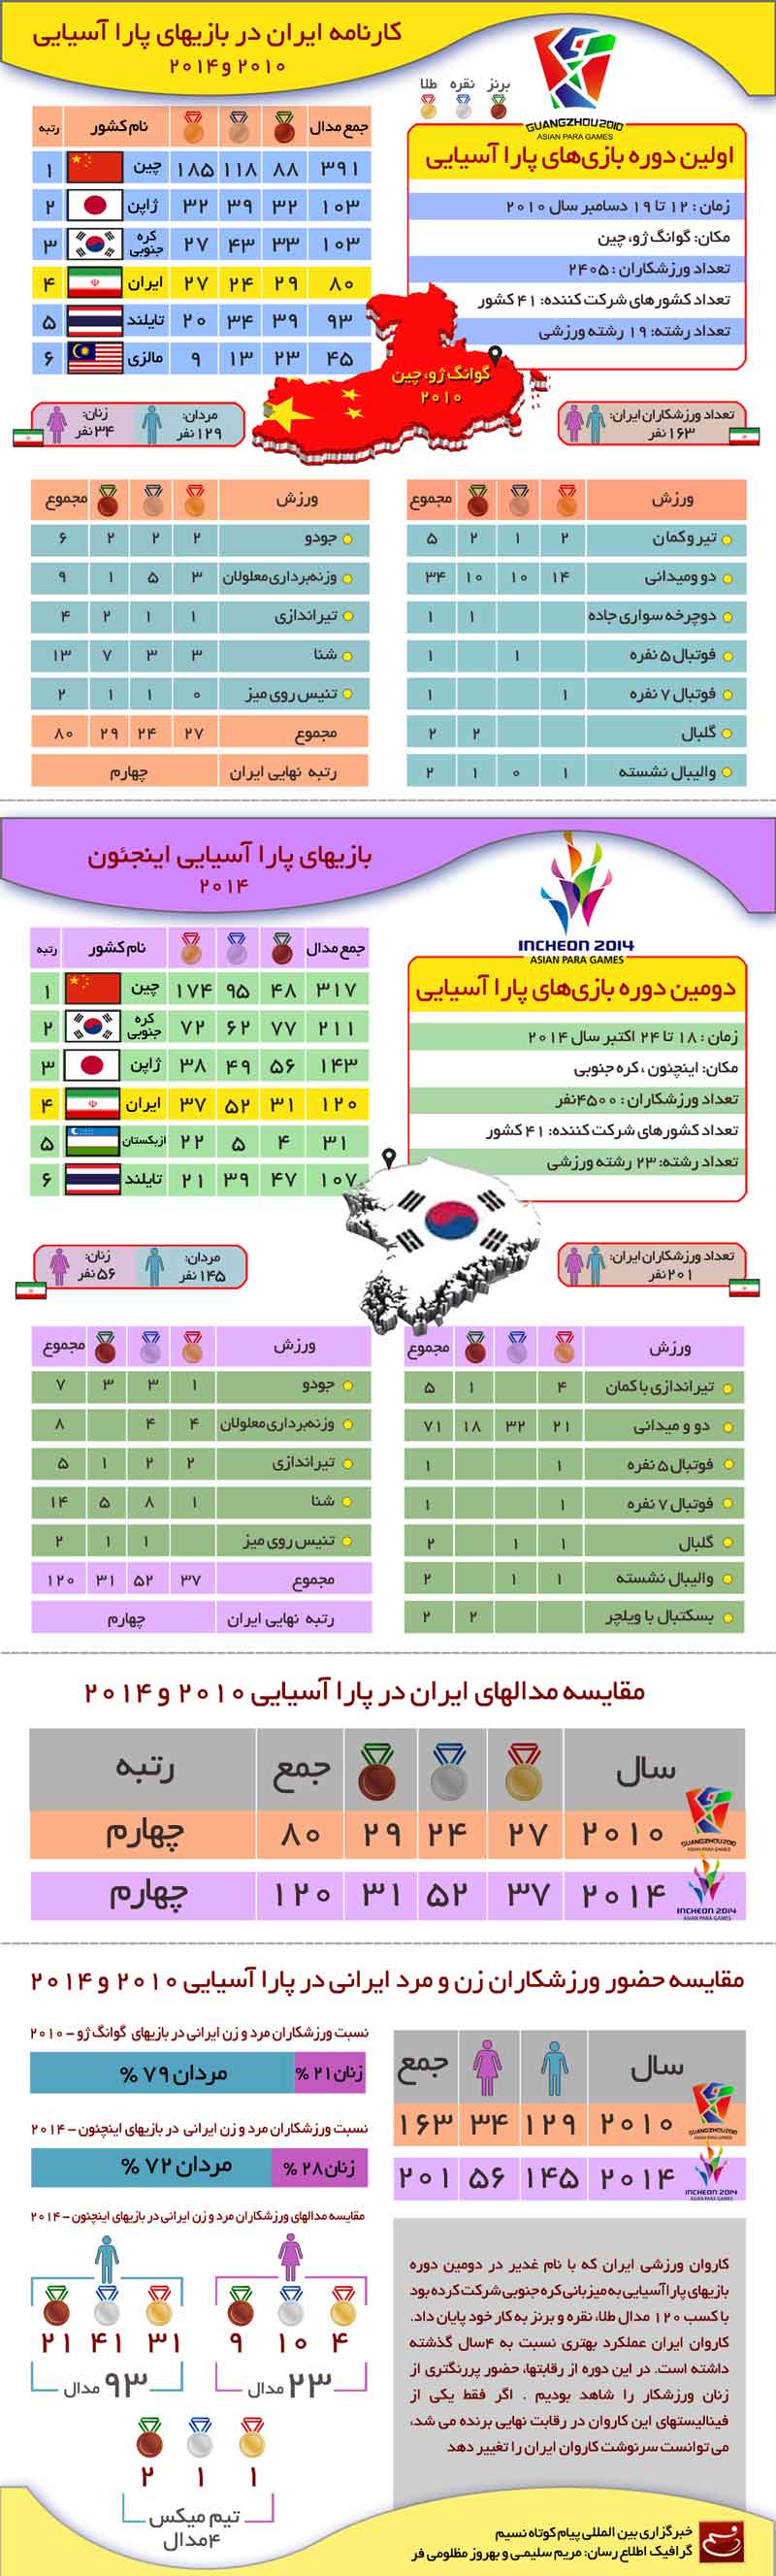 گرافیک اطلاع رسان کارنامه ایران در بازیهای پاراآسیایی 2010 و 2014